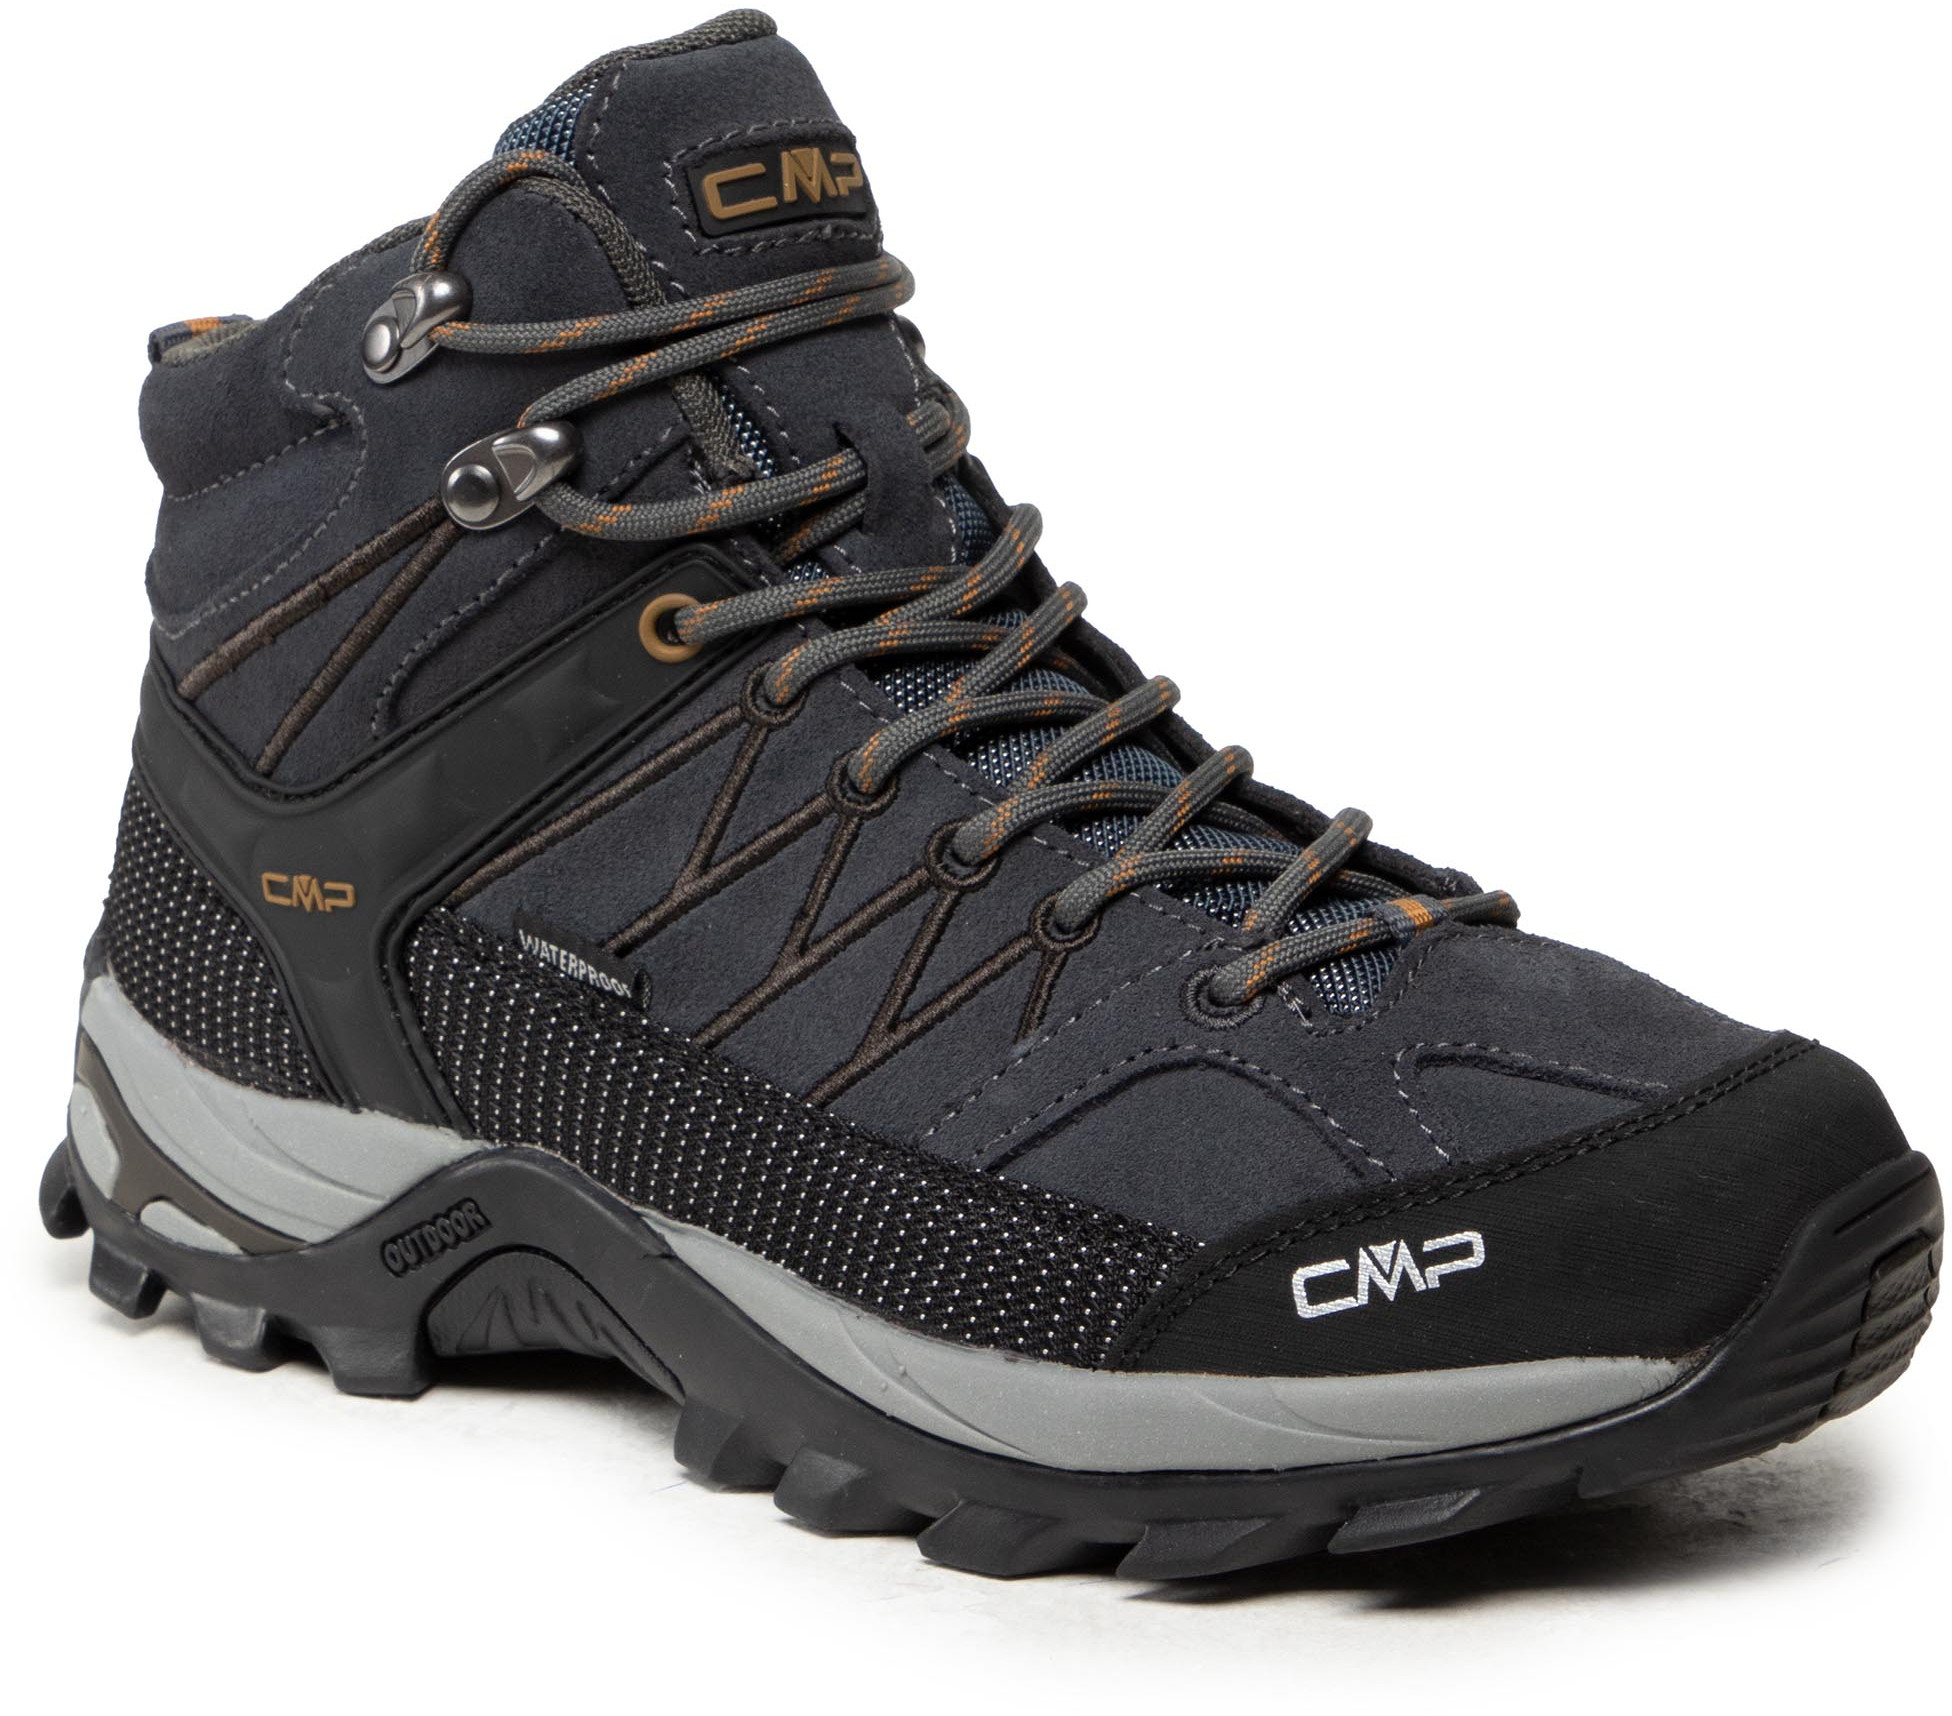 CMP Trekkingi Rigel Mid Trekking Shoe Wp 3Q12947 Antracite/Arabica 68UH